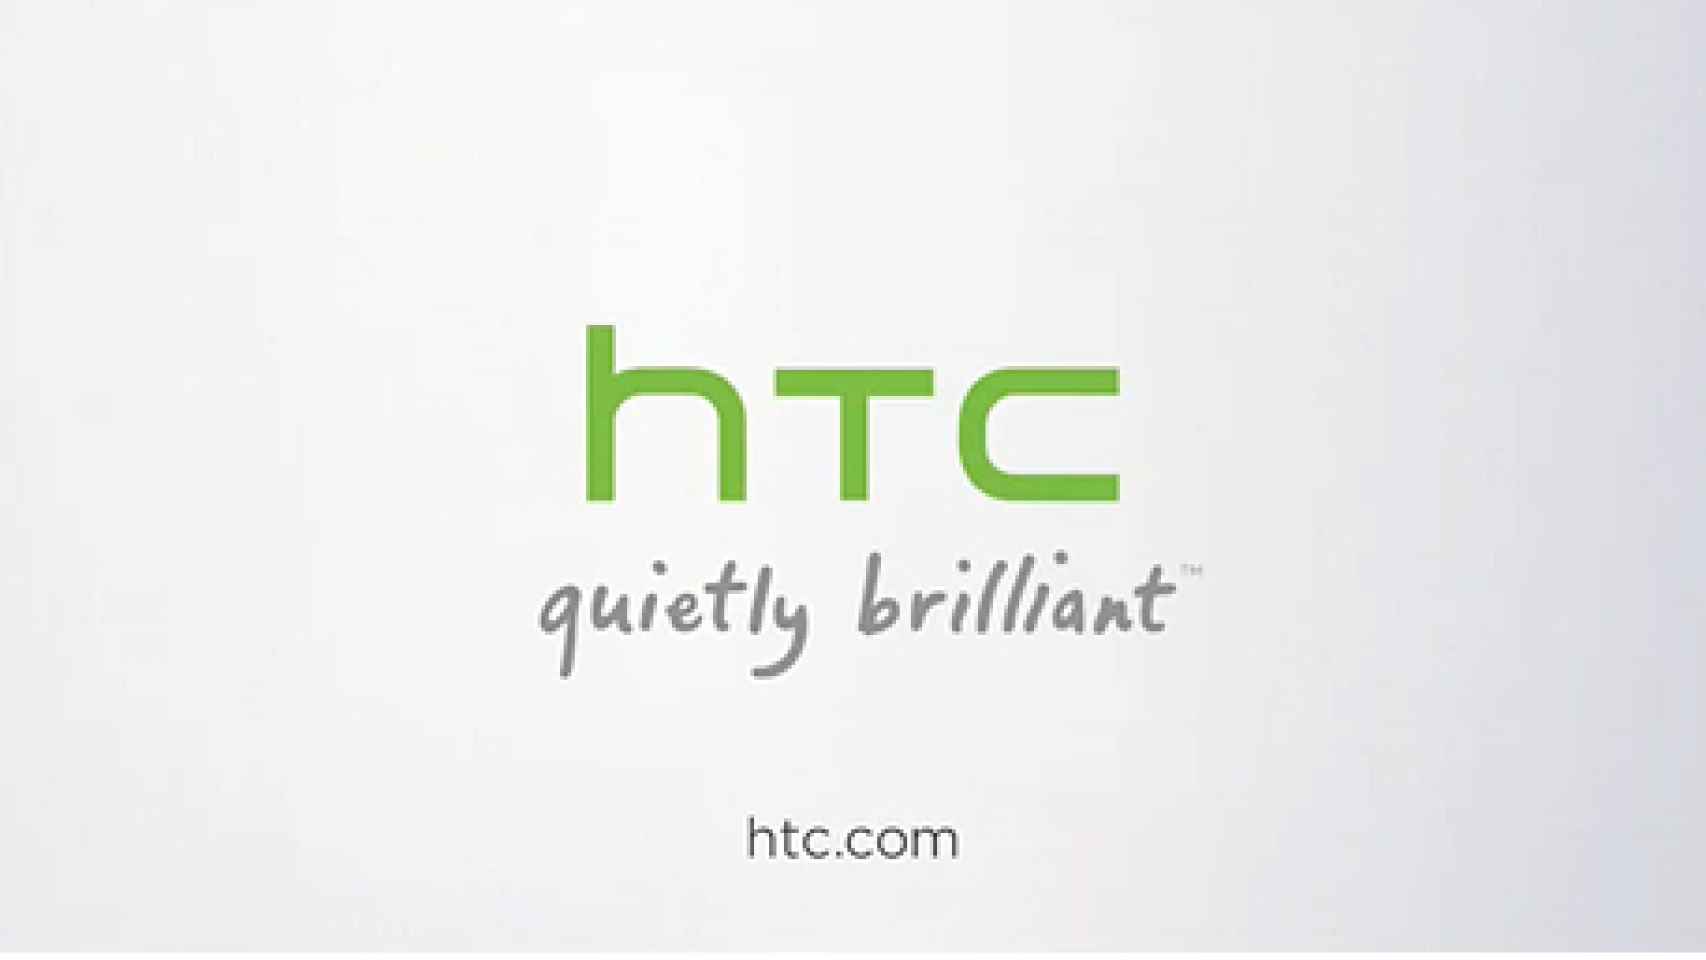 HTC confirma su interés por comprar otros sistemas operativos (Web OS)